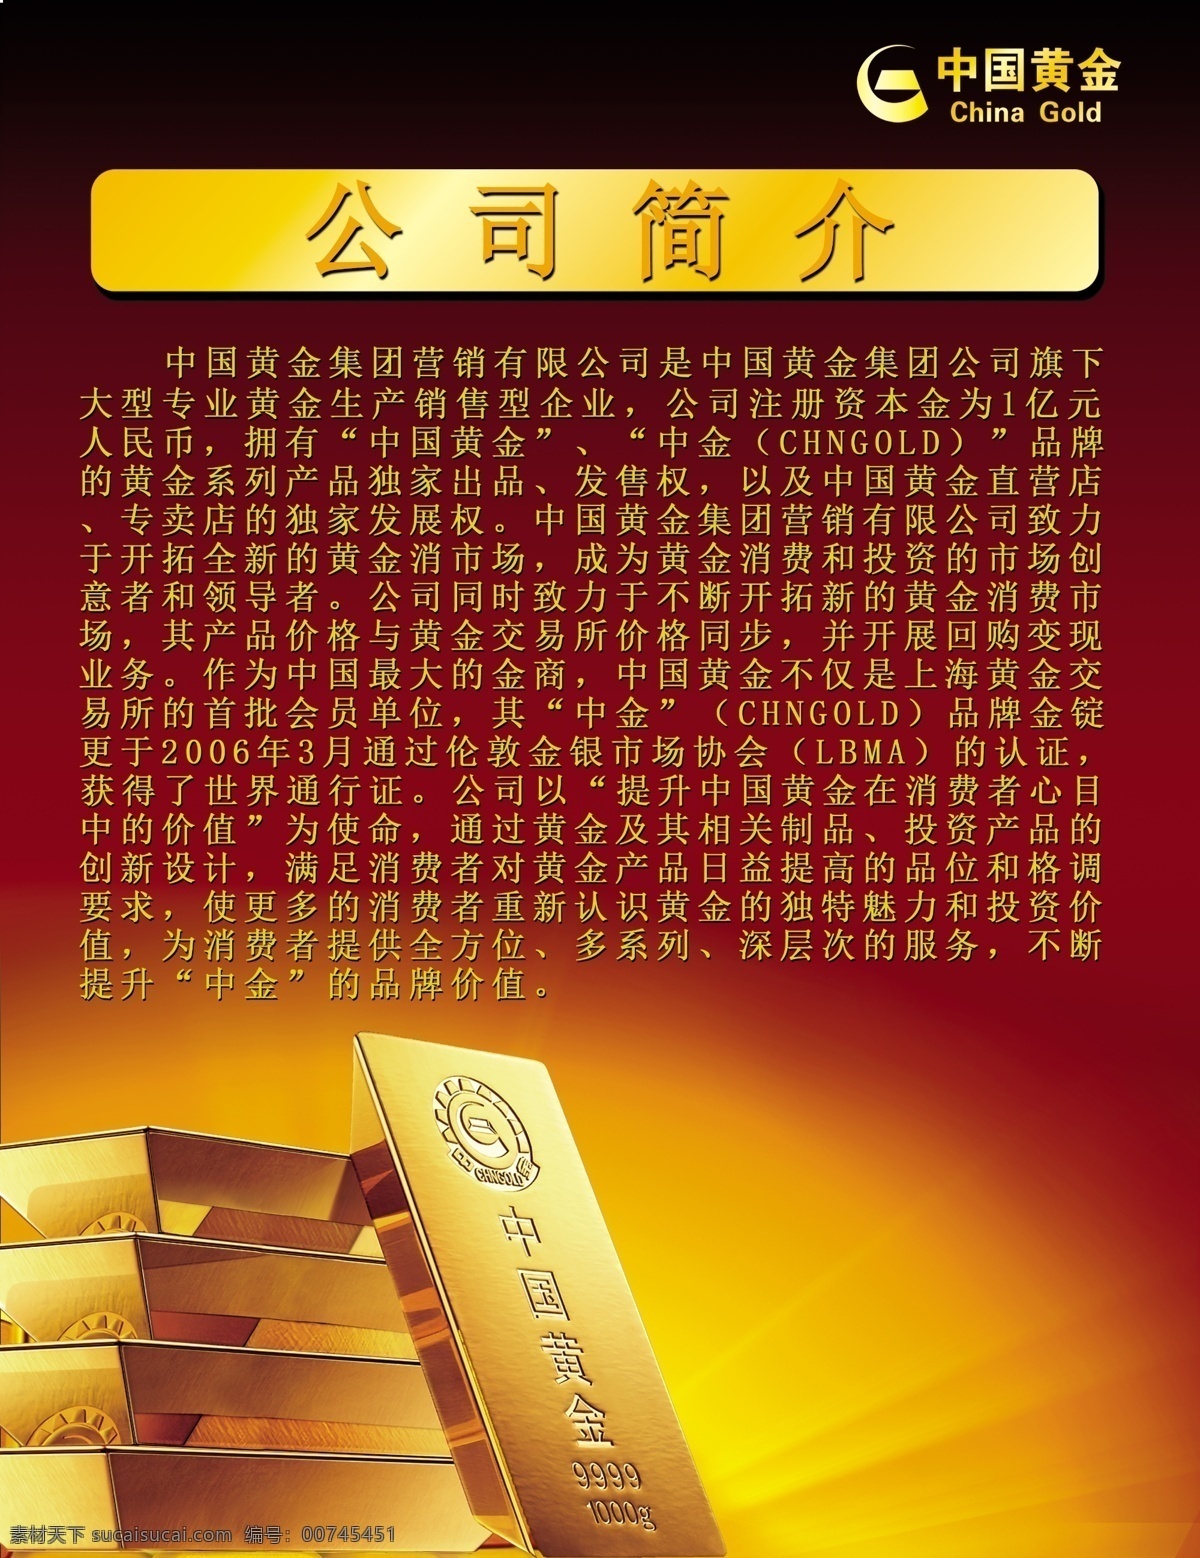 中国黄金 海报 公司简介 灯光片 黄金 金砖 金条 广告设计模板 源文件